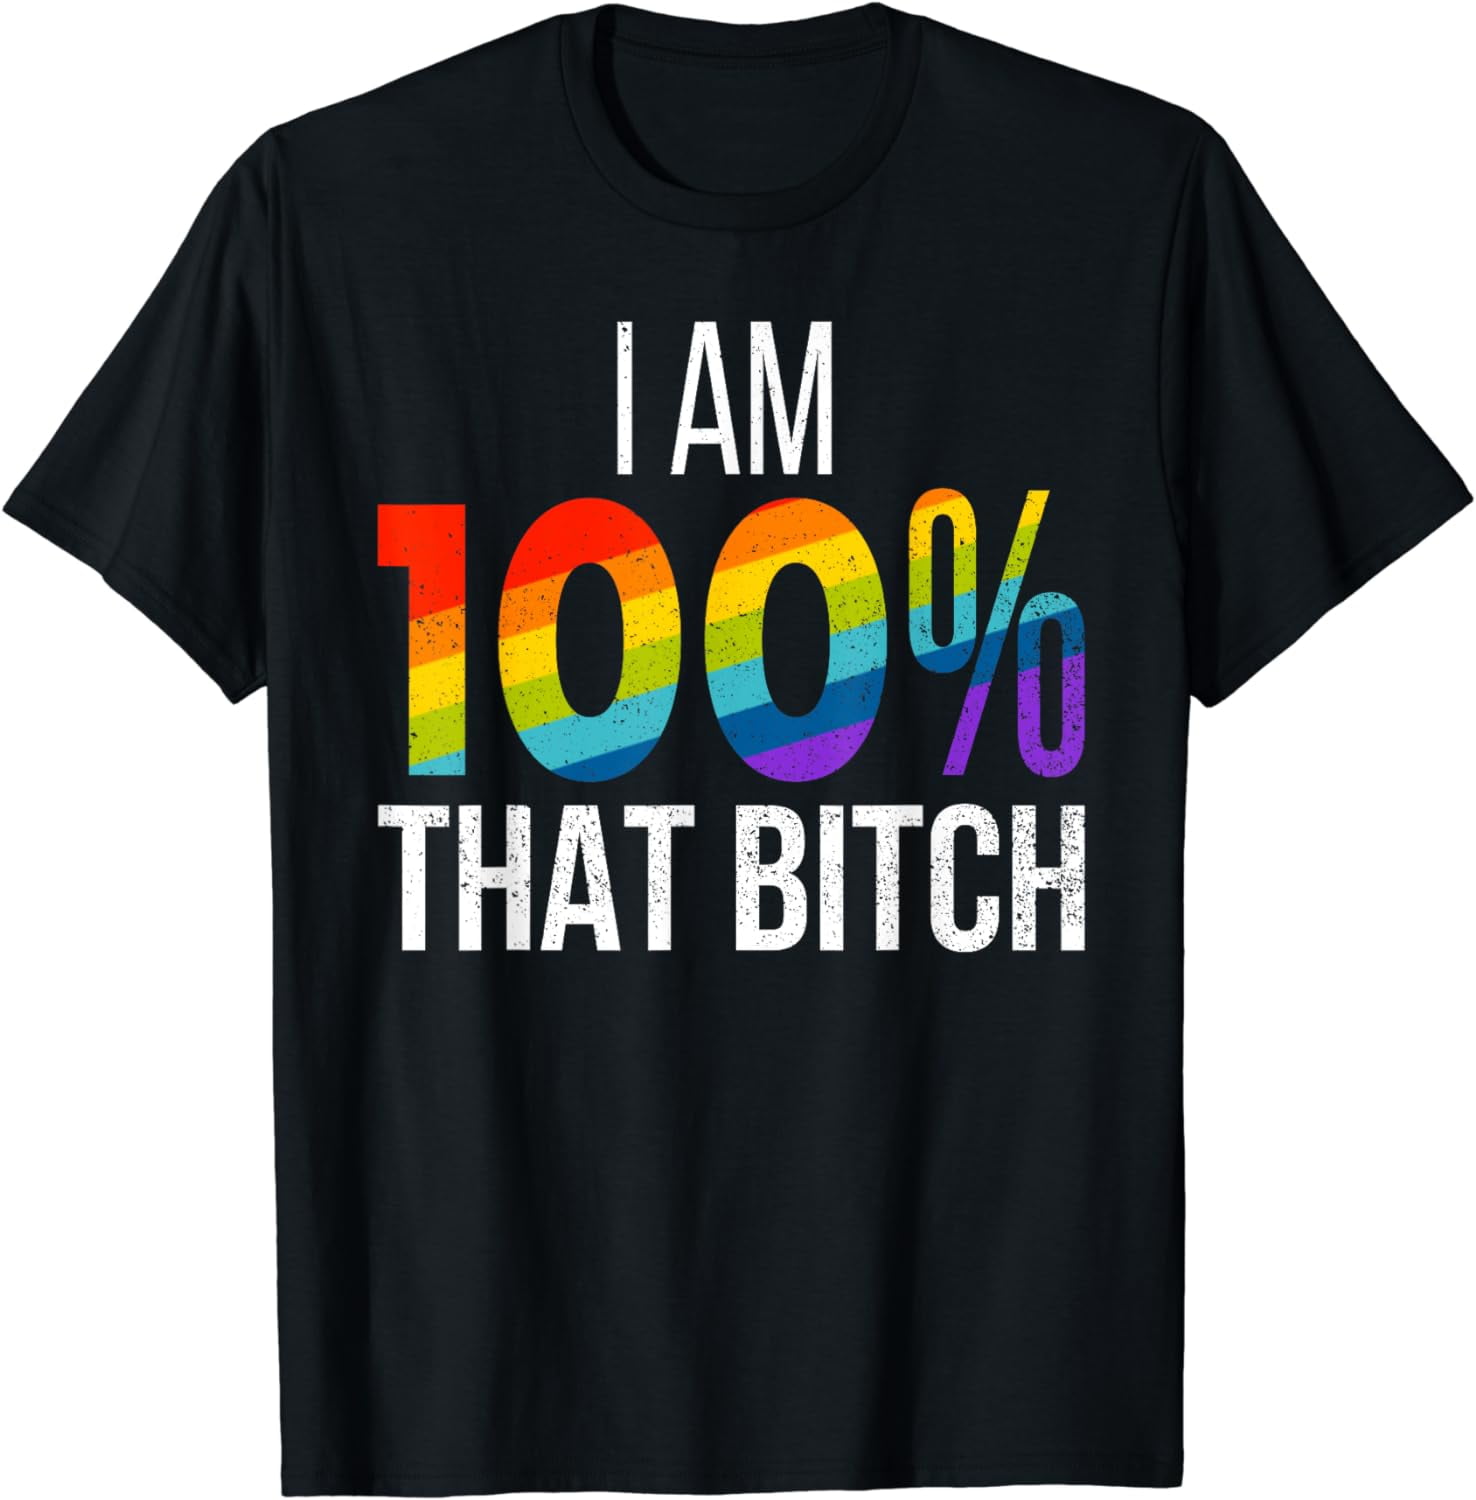 I Am 100% That Bitch Funny Gay Lesbian Pride LGBT Rainbow T-Shirt ...